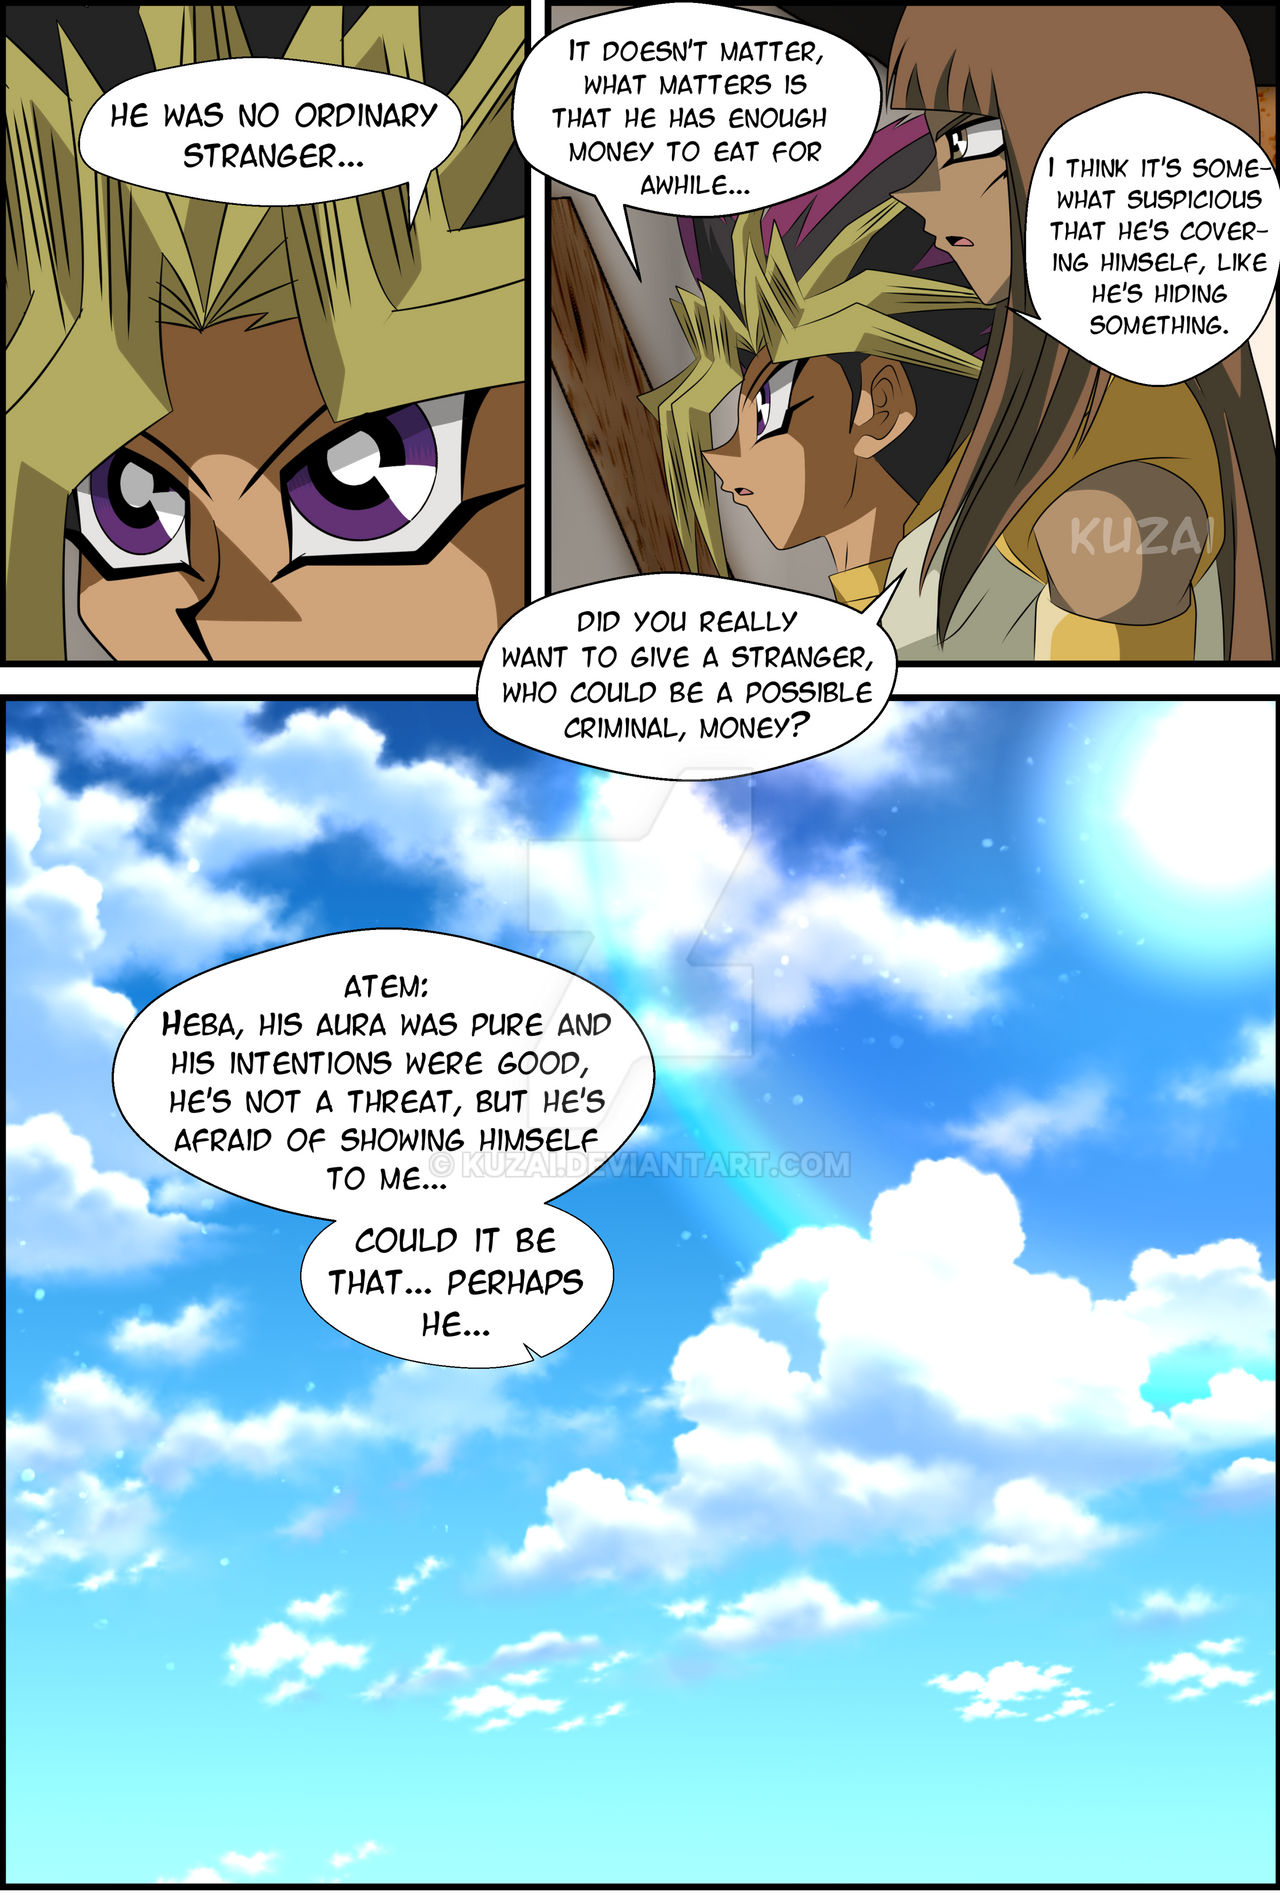 Pikapal's blog: Yu-Gi-Oh! Engrish Comic of the Bootleg Kind